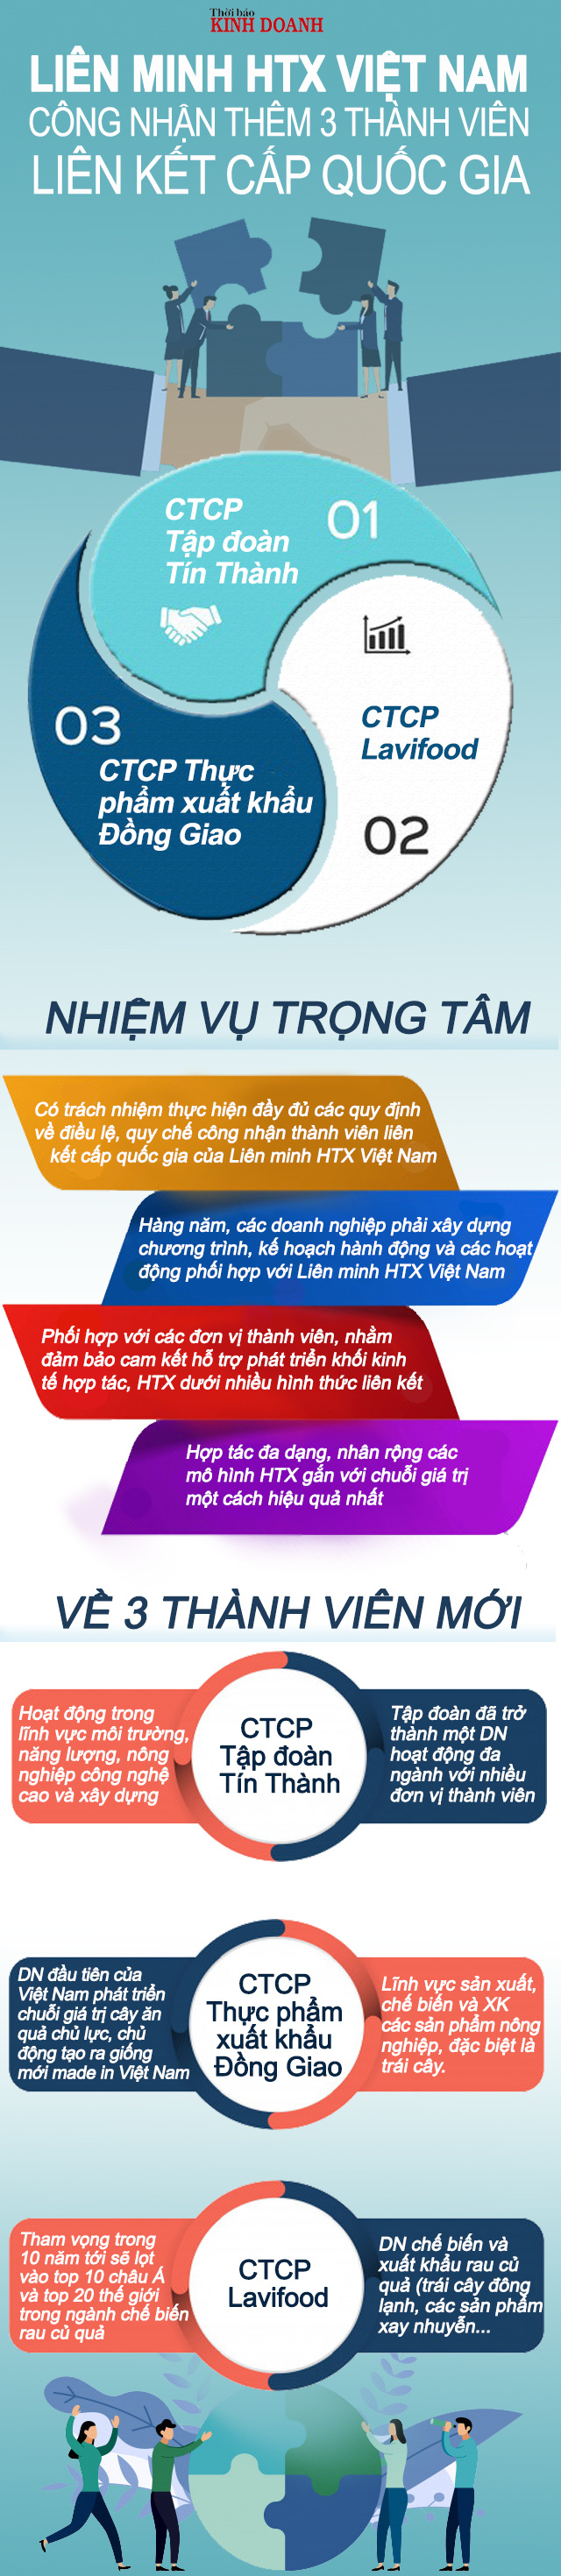 Lien-minh-HTX-Viet-Nam-cong-nh-8208-6941